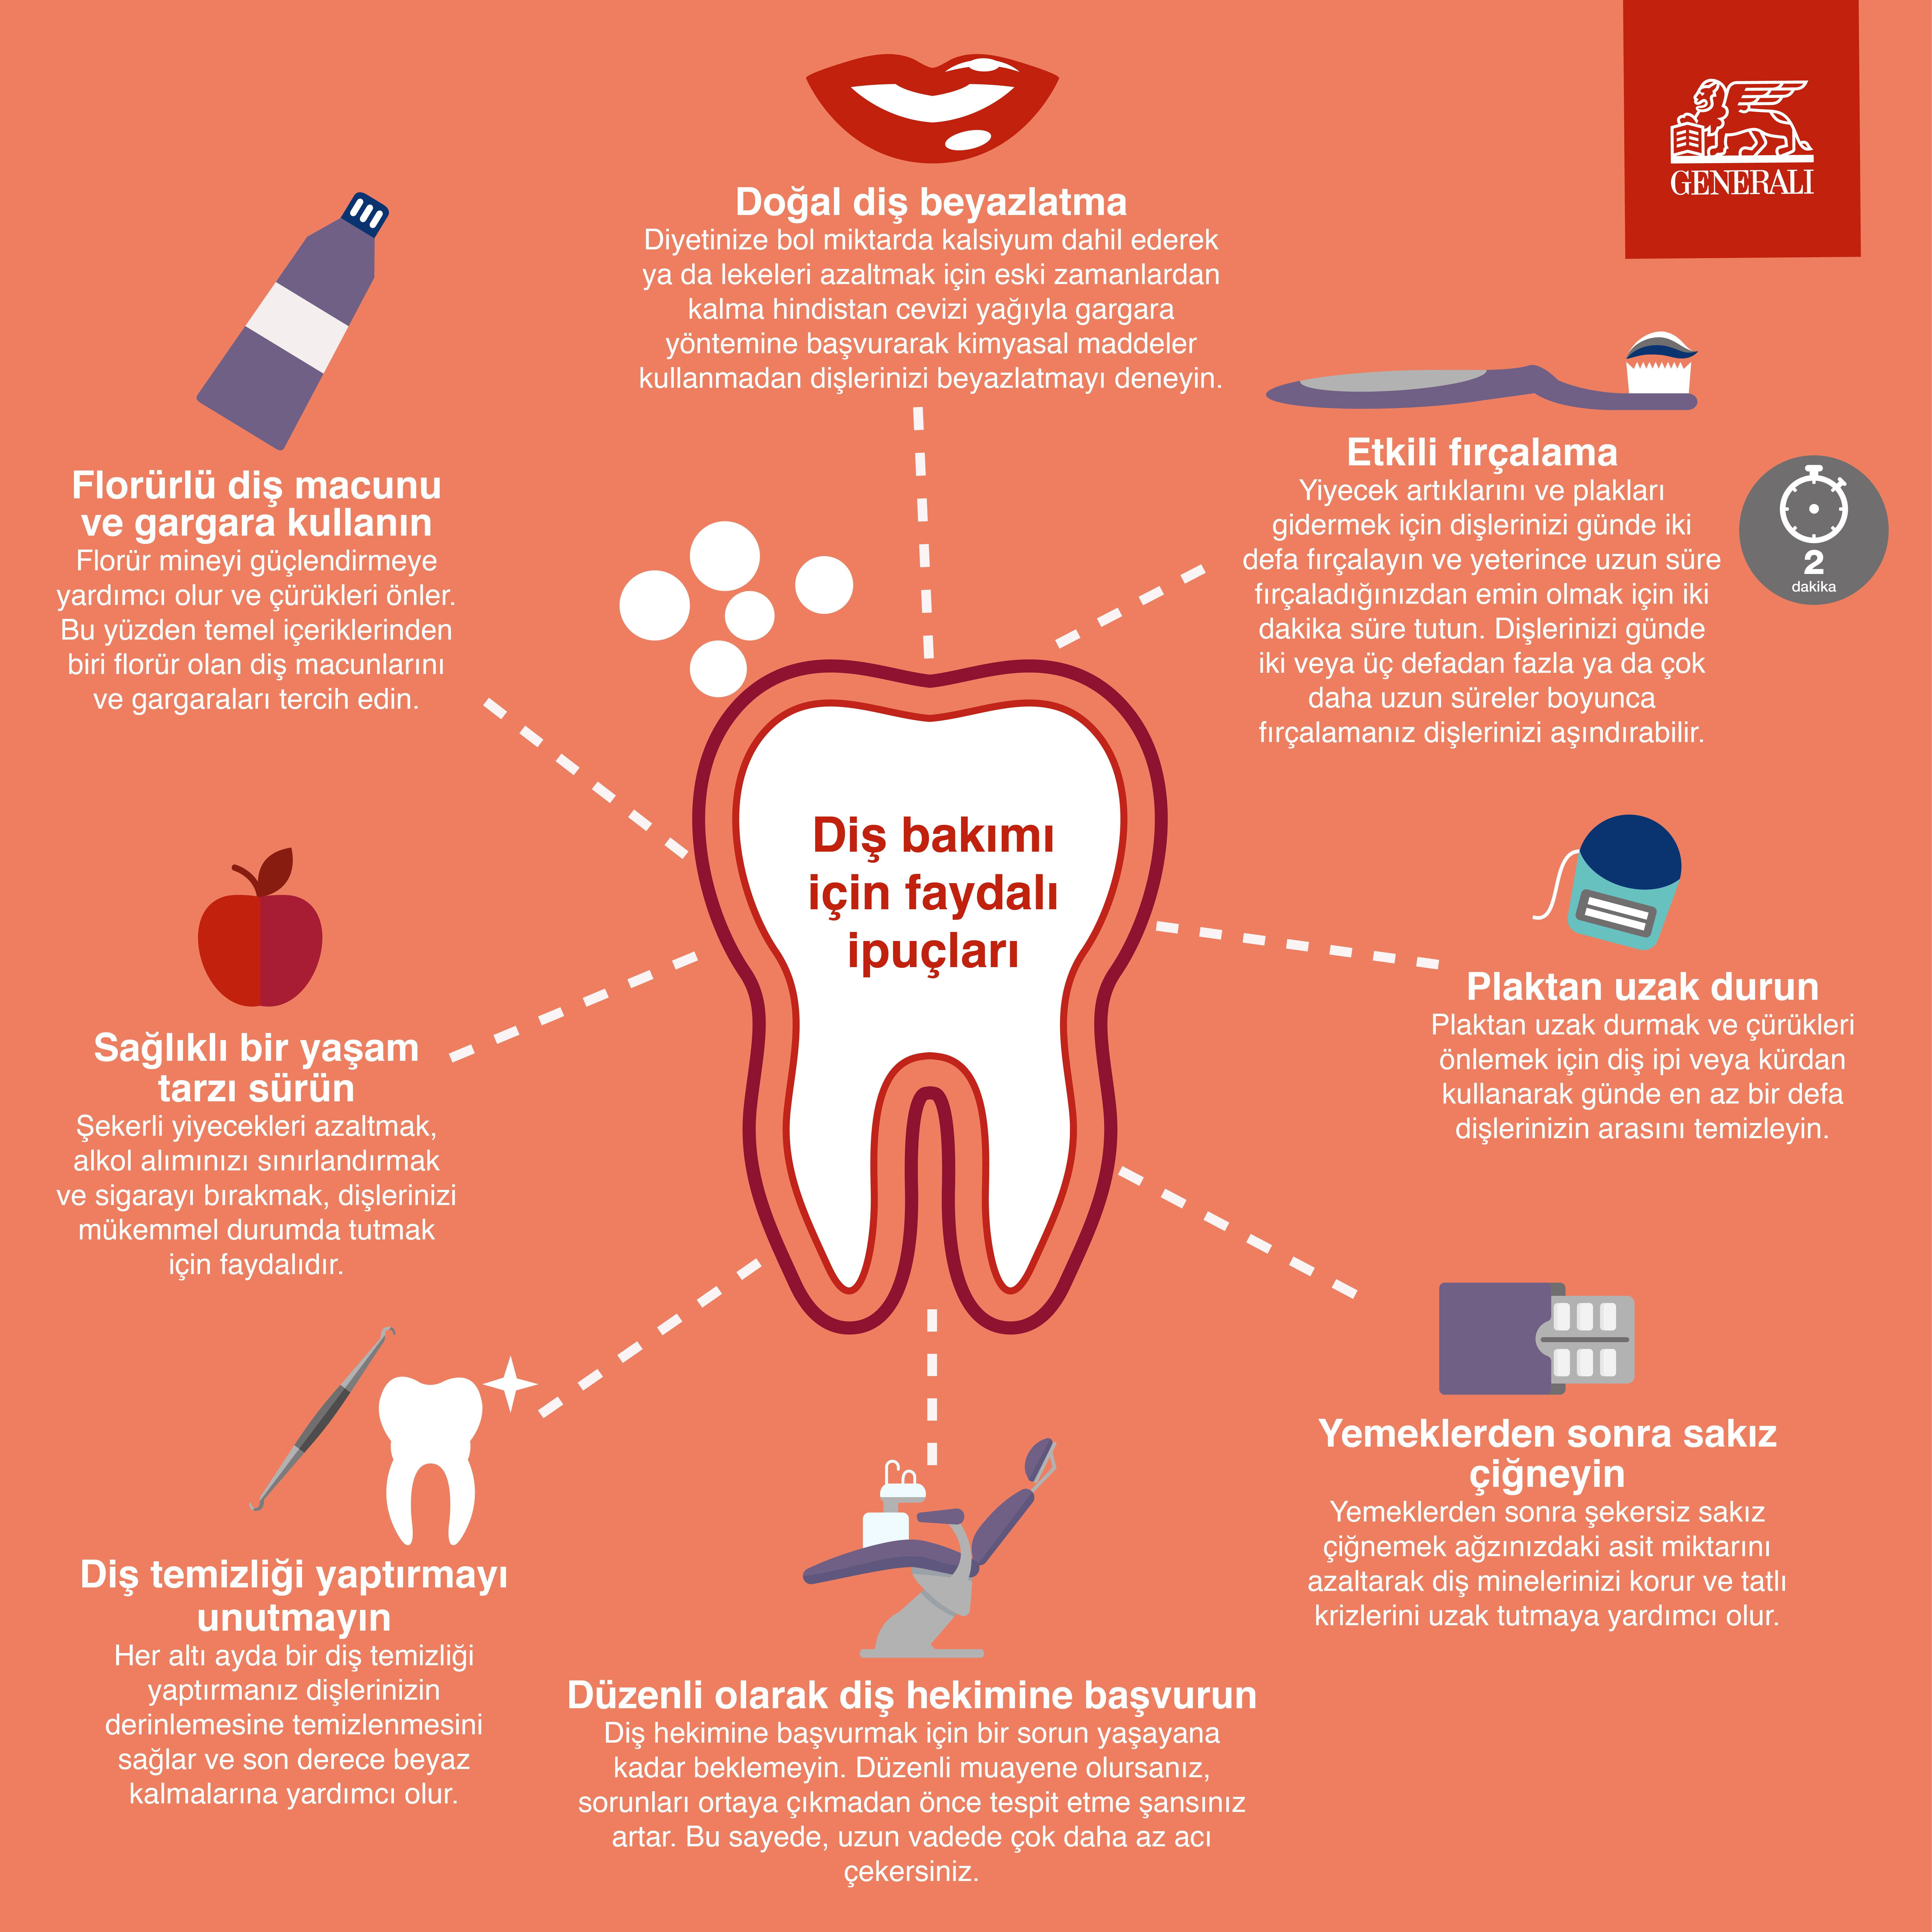 Zz1mYmMyNDE5NGU5ZjJhZDEwNGFiZjE0NGZiYTlkNThlMg== İnfografik: Diş bakımı için faydalı ipuçları